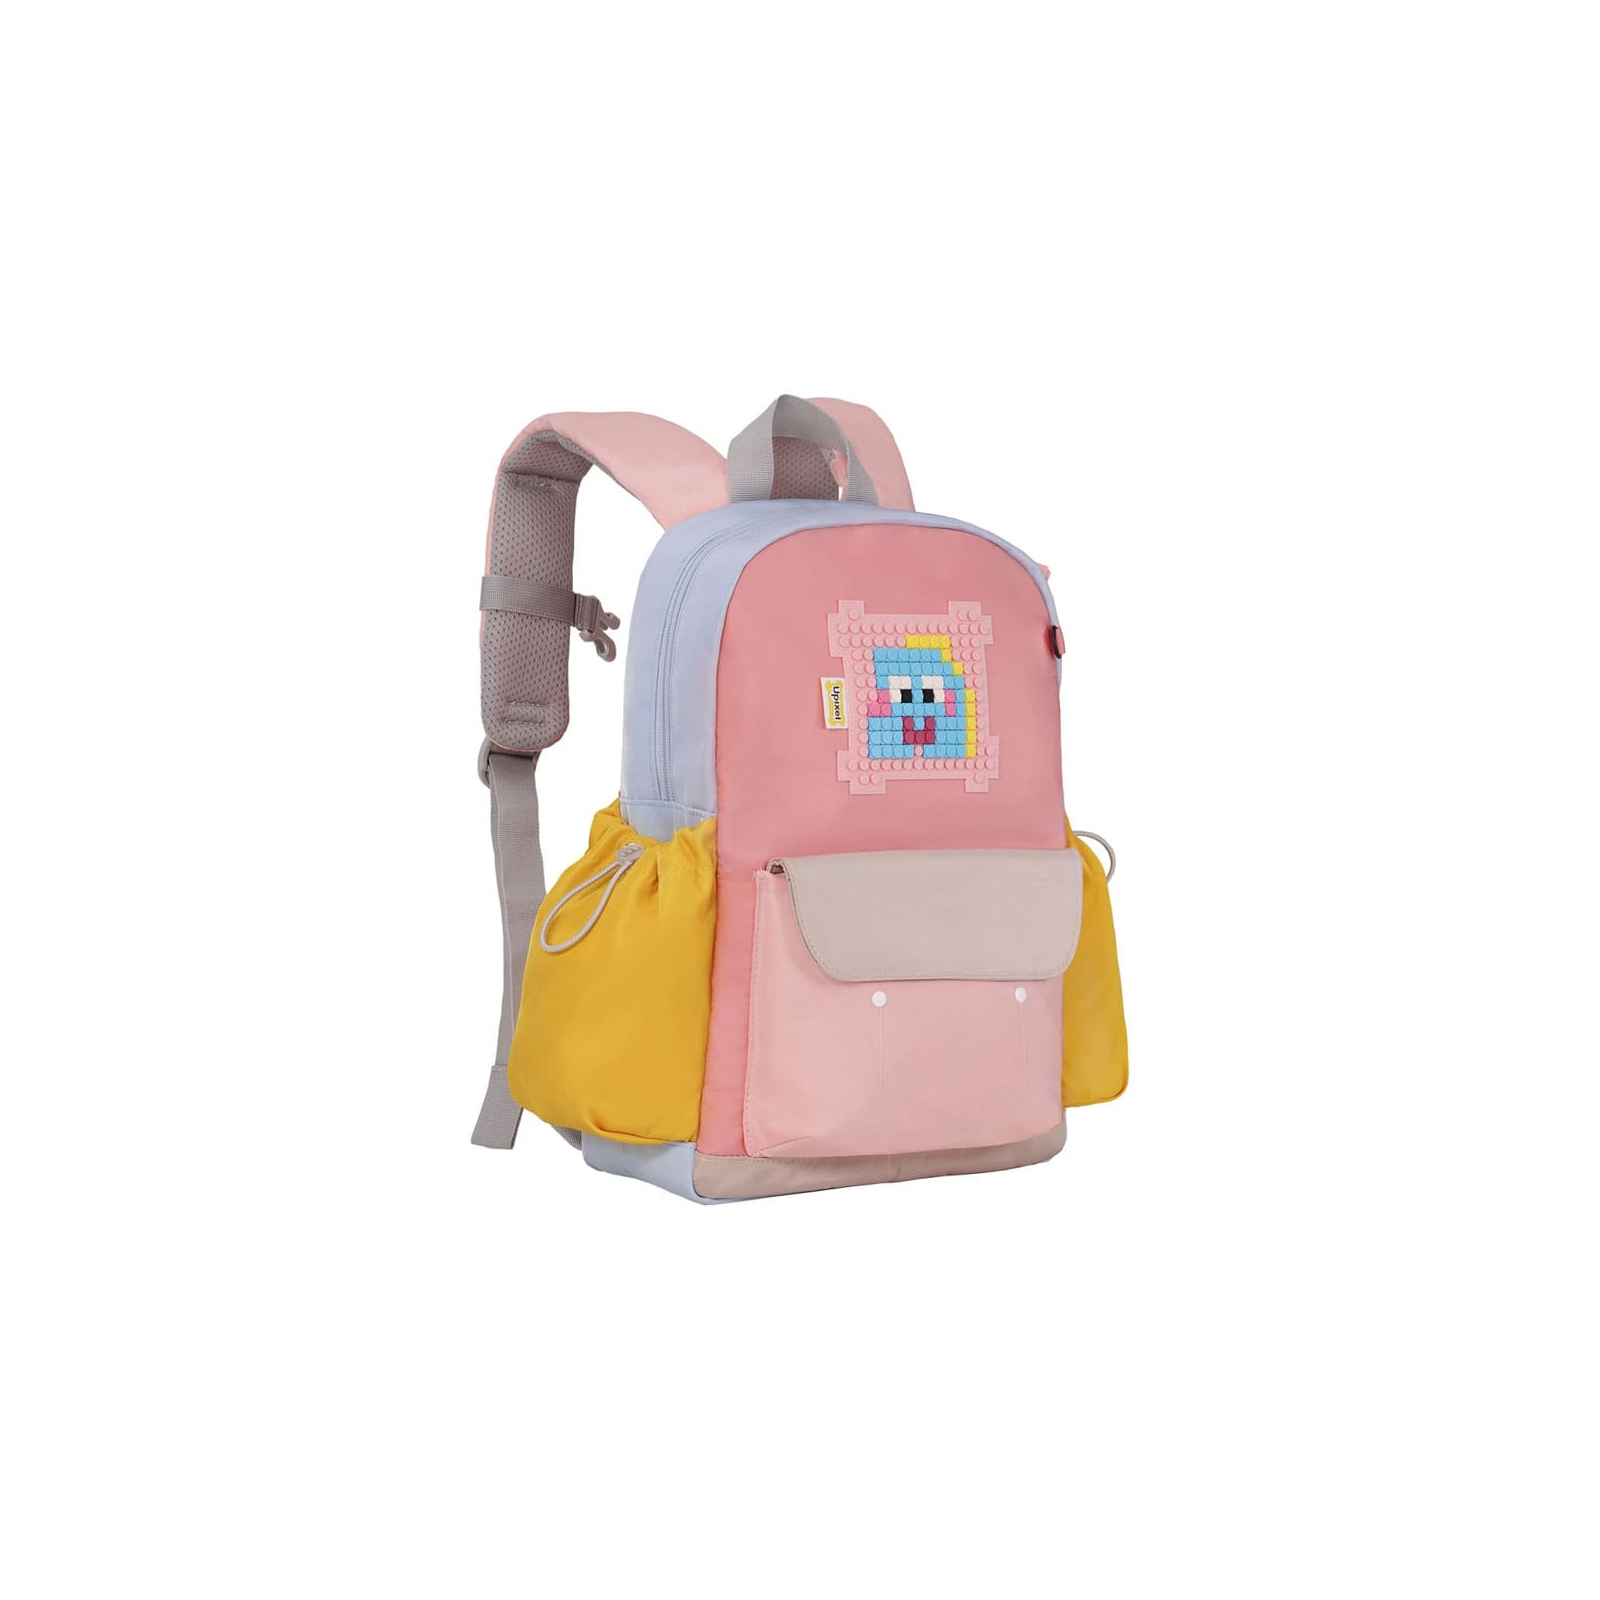 Рюкзак школьный Upixel Urban-ACE backpack M - Мульти-розовый (UB002-A)